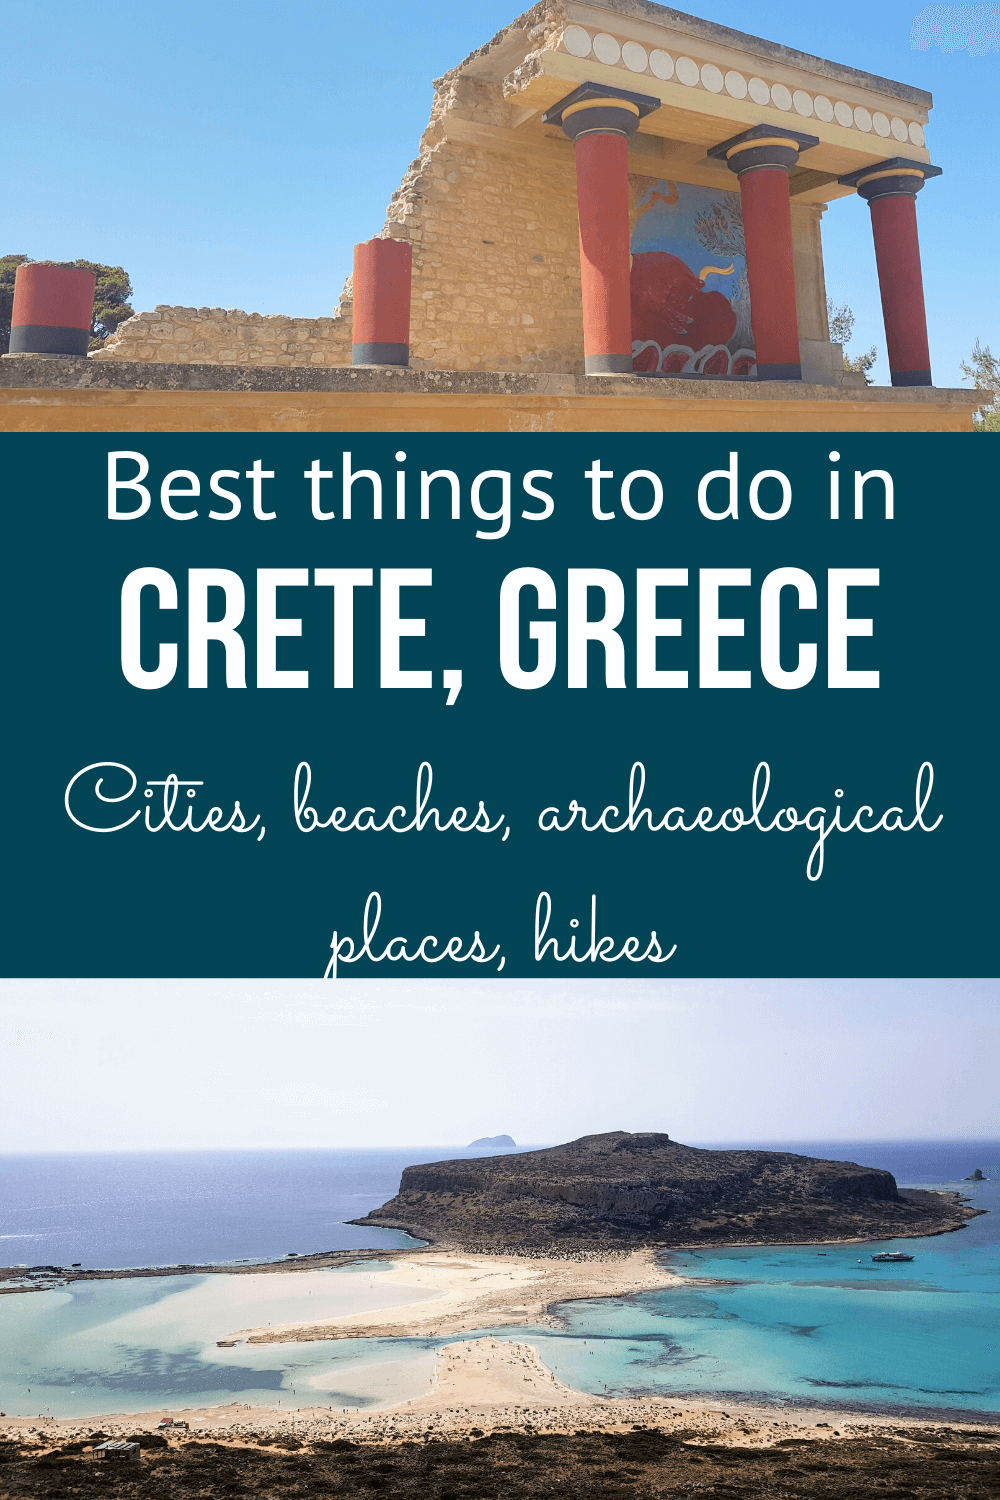 Crete-1